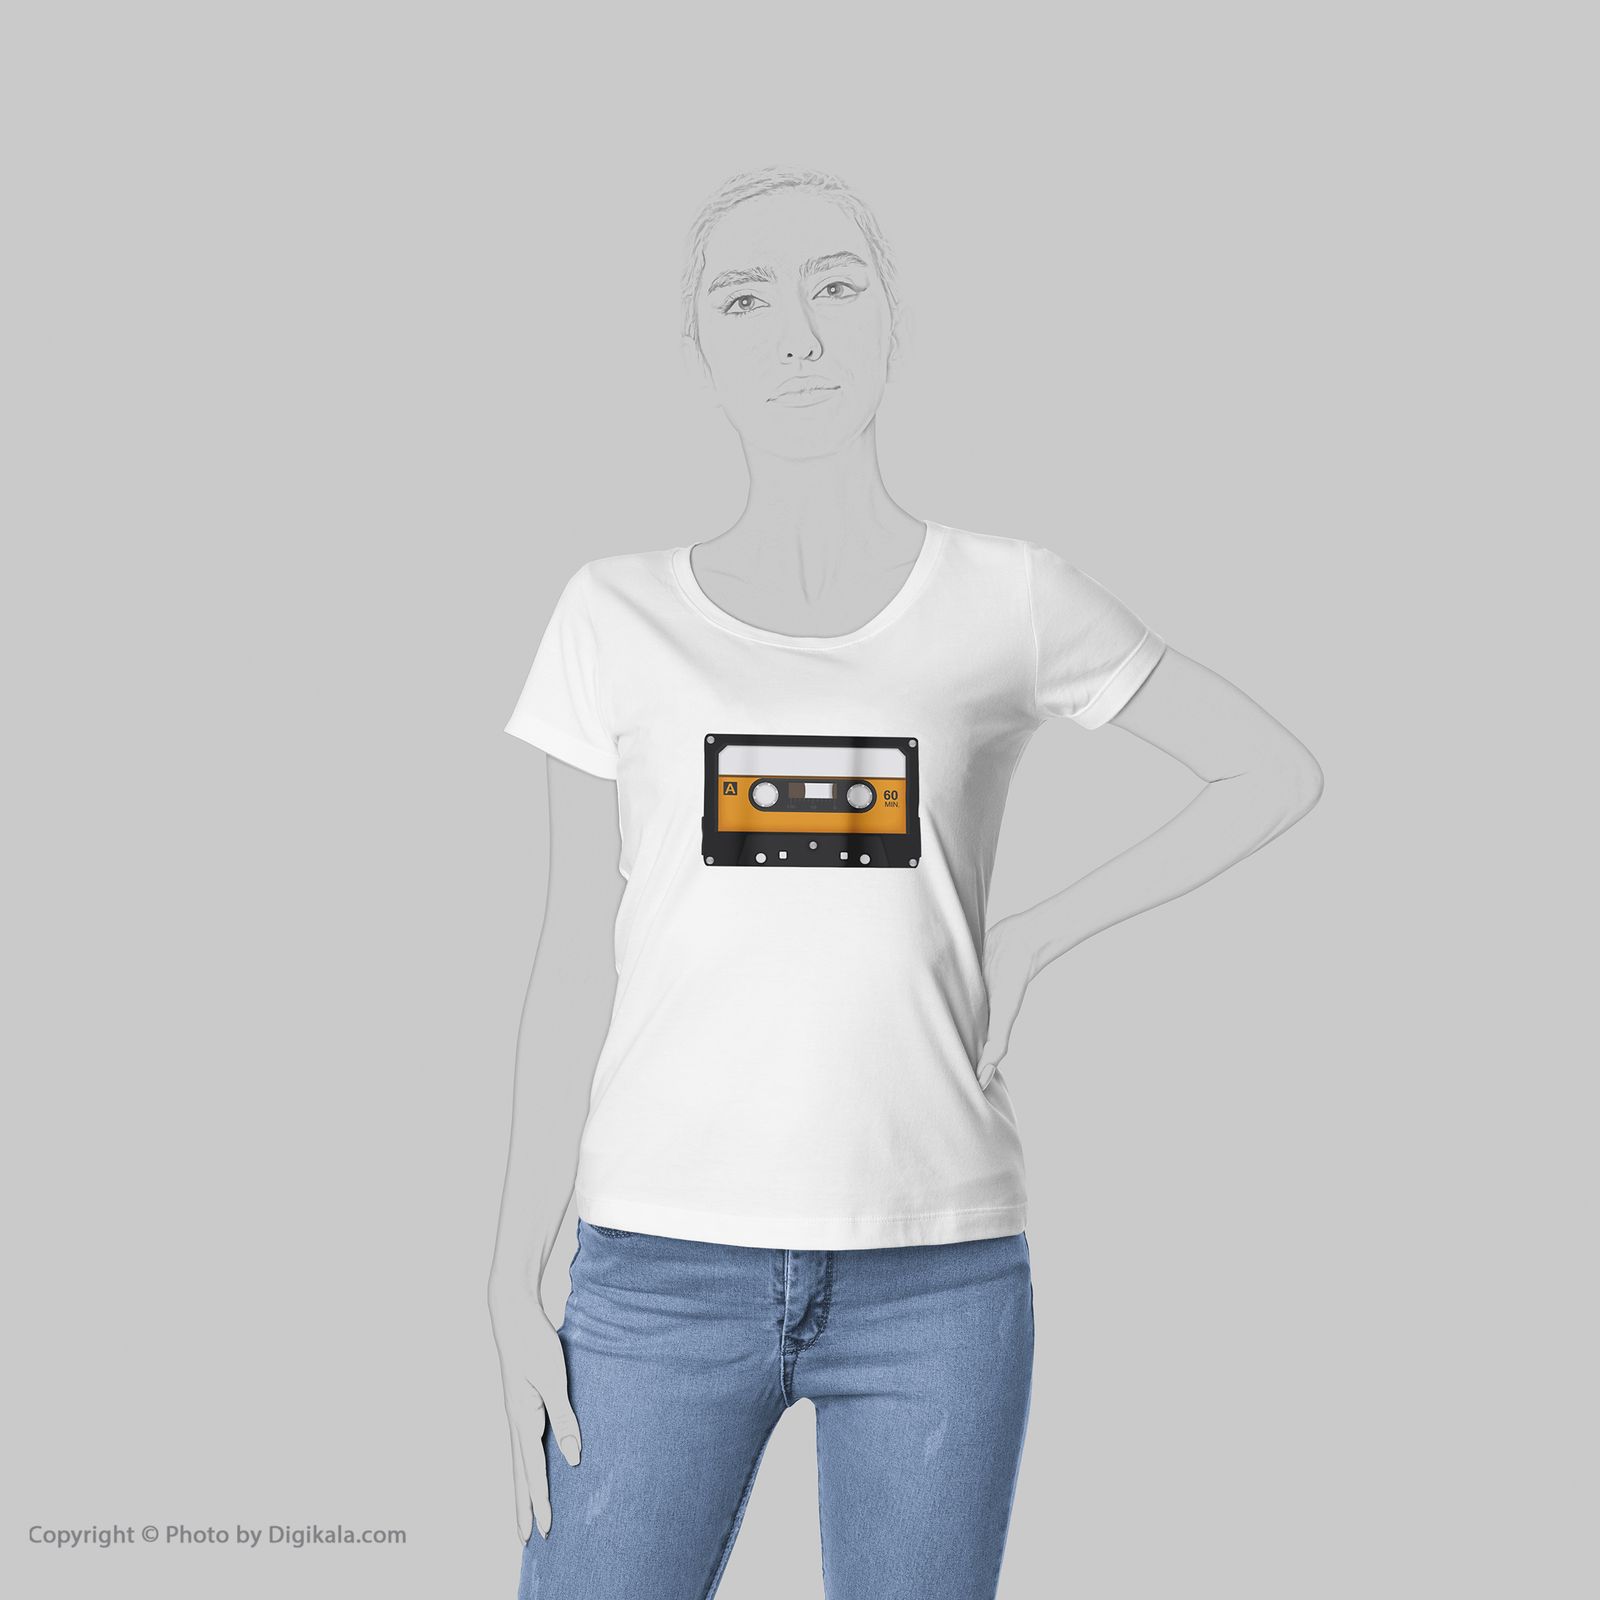 تی شرت زنانه به رسم طرح نوارکاست کد 5535 -  - 6